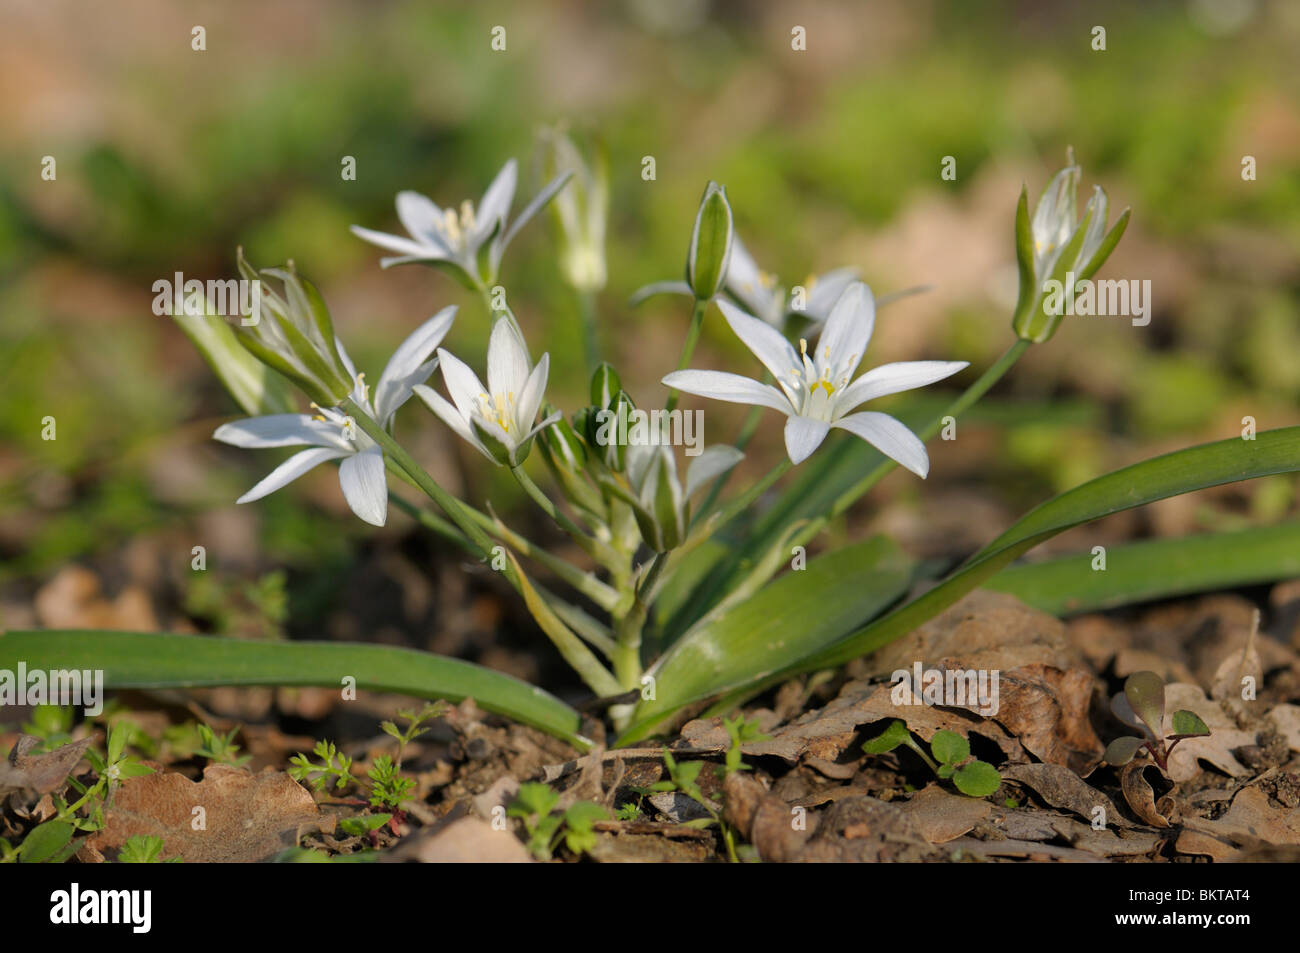 vogelmelk in bloei; star-of-bethlehem or grass lily in flower Stock Photo